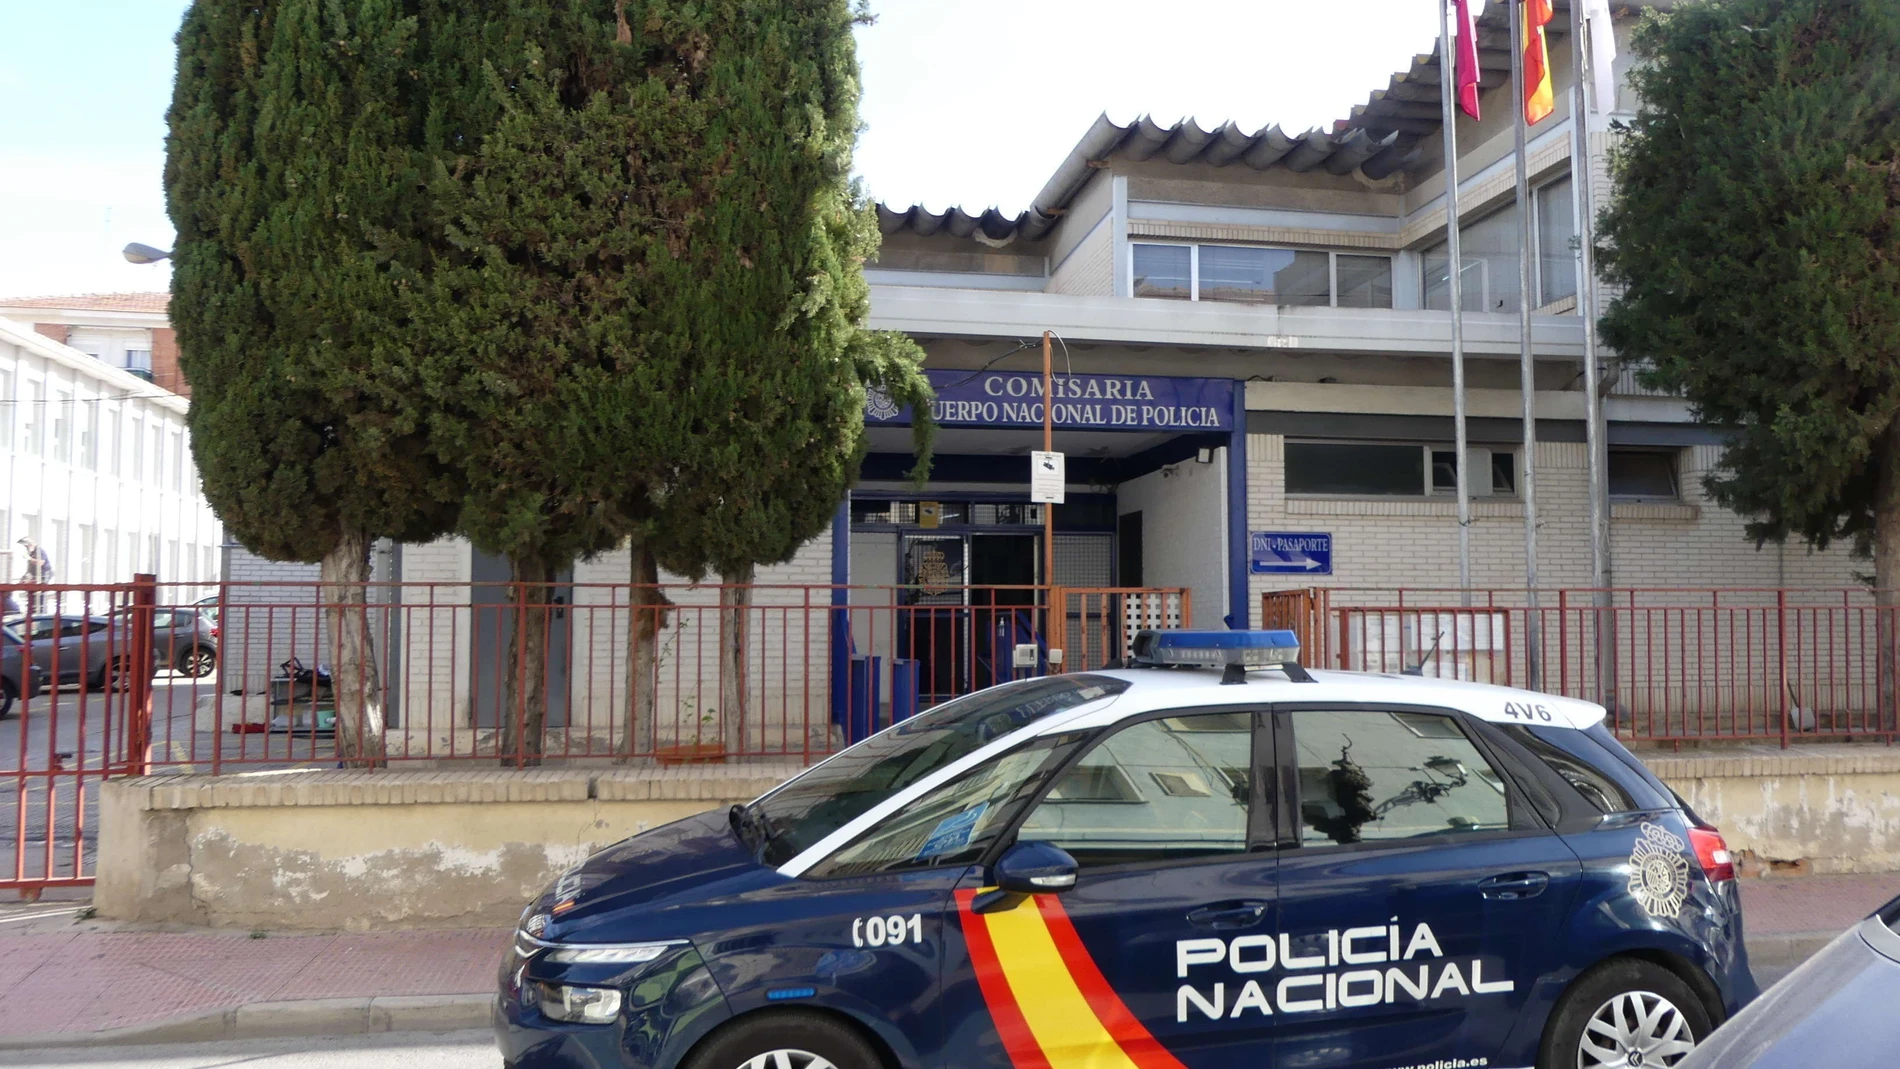 Un coche patrulla, en la Comisaría de Policía Nacional en Molina de Segura
POLICÍA NACIONAL
08/05/2023